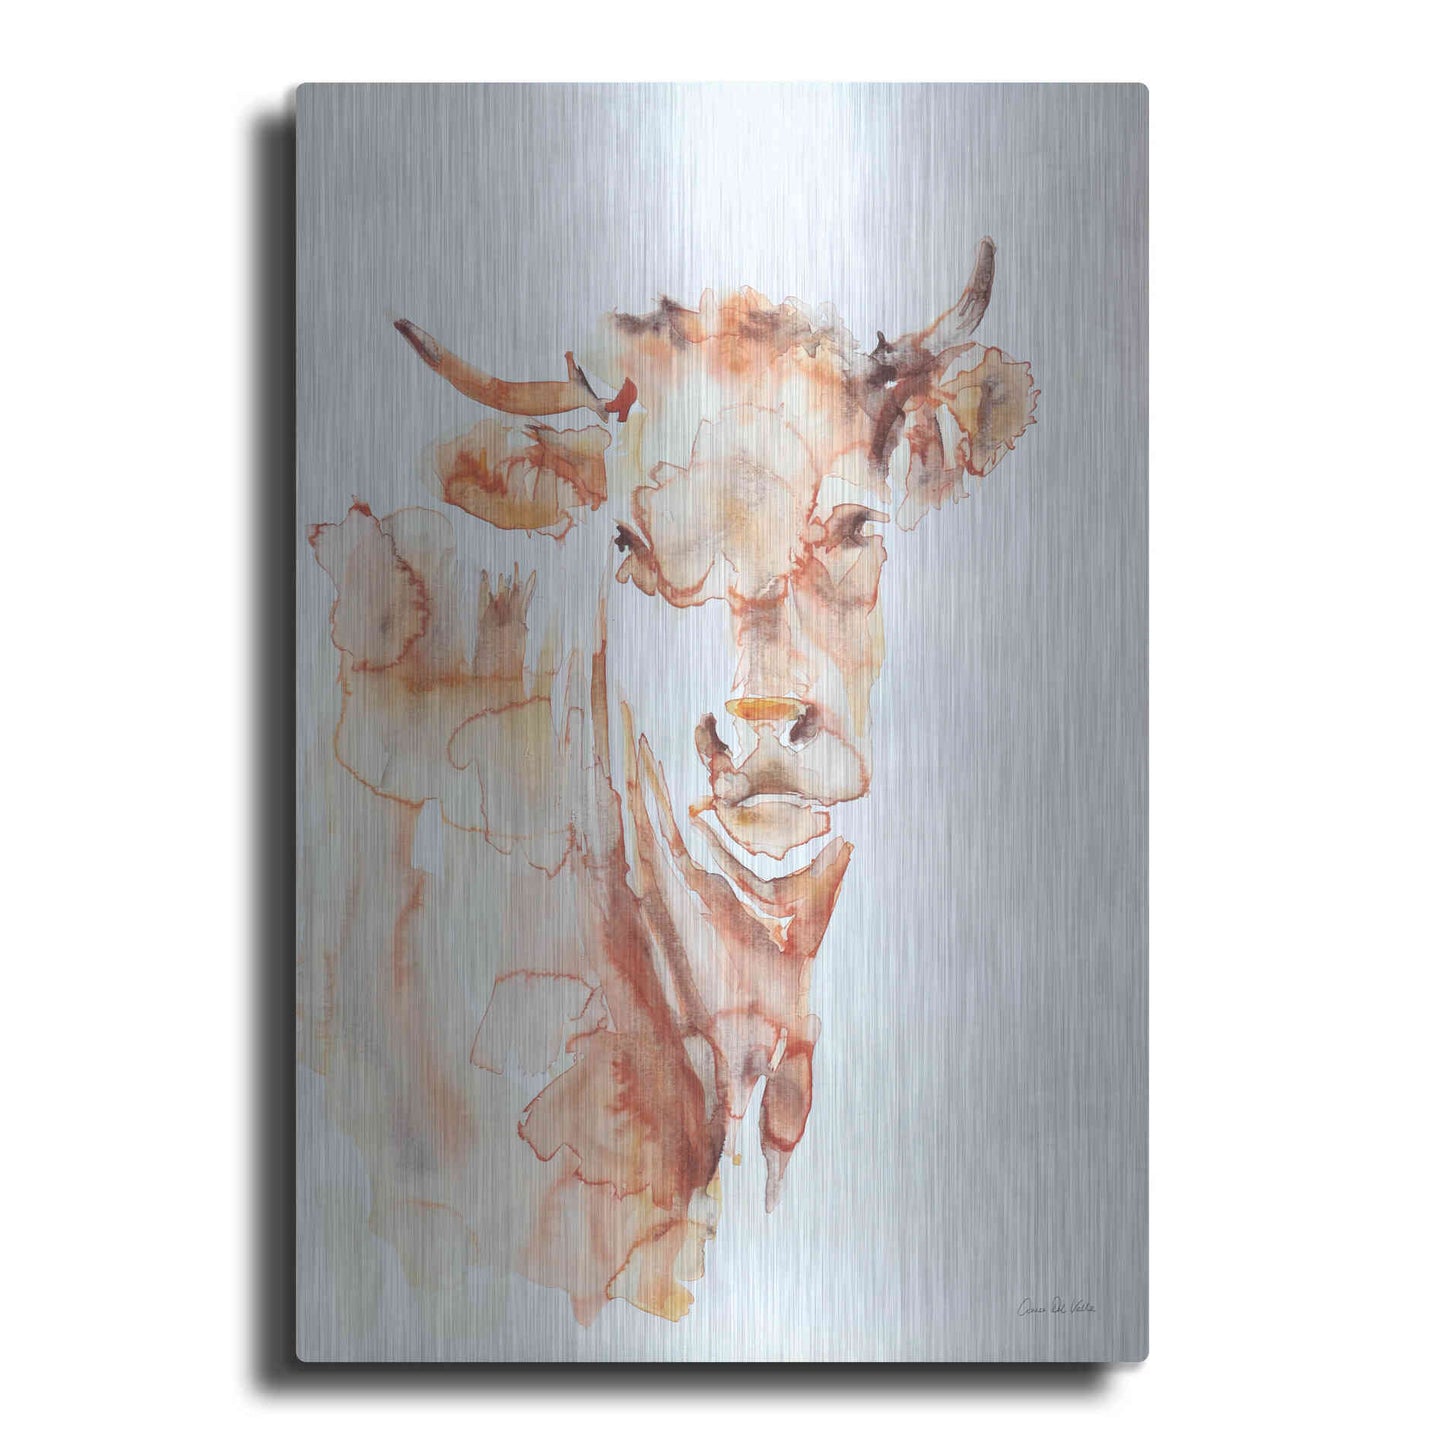 Luxe Metal Art 'Village Cow' by Alan Majchrowicz, Metal Wall Art